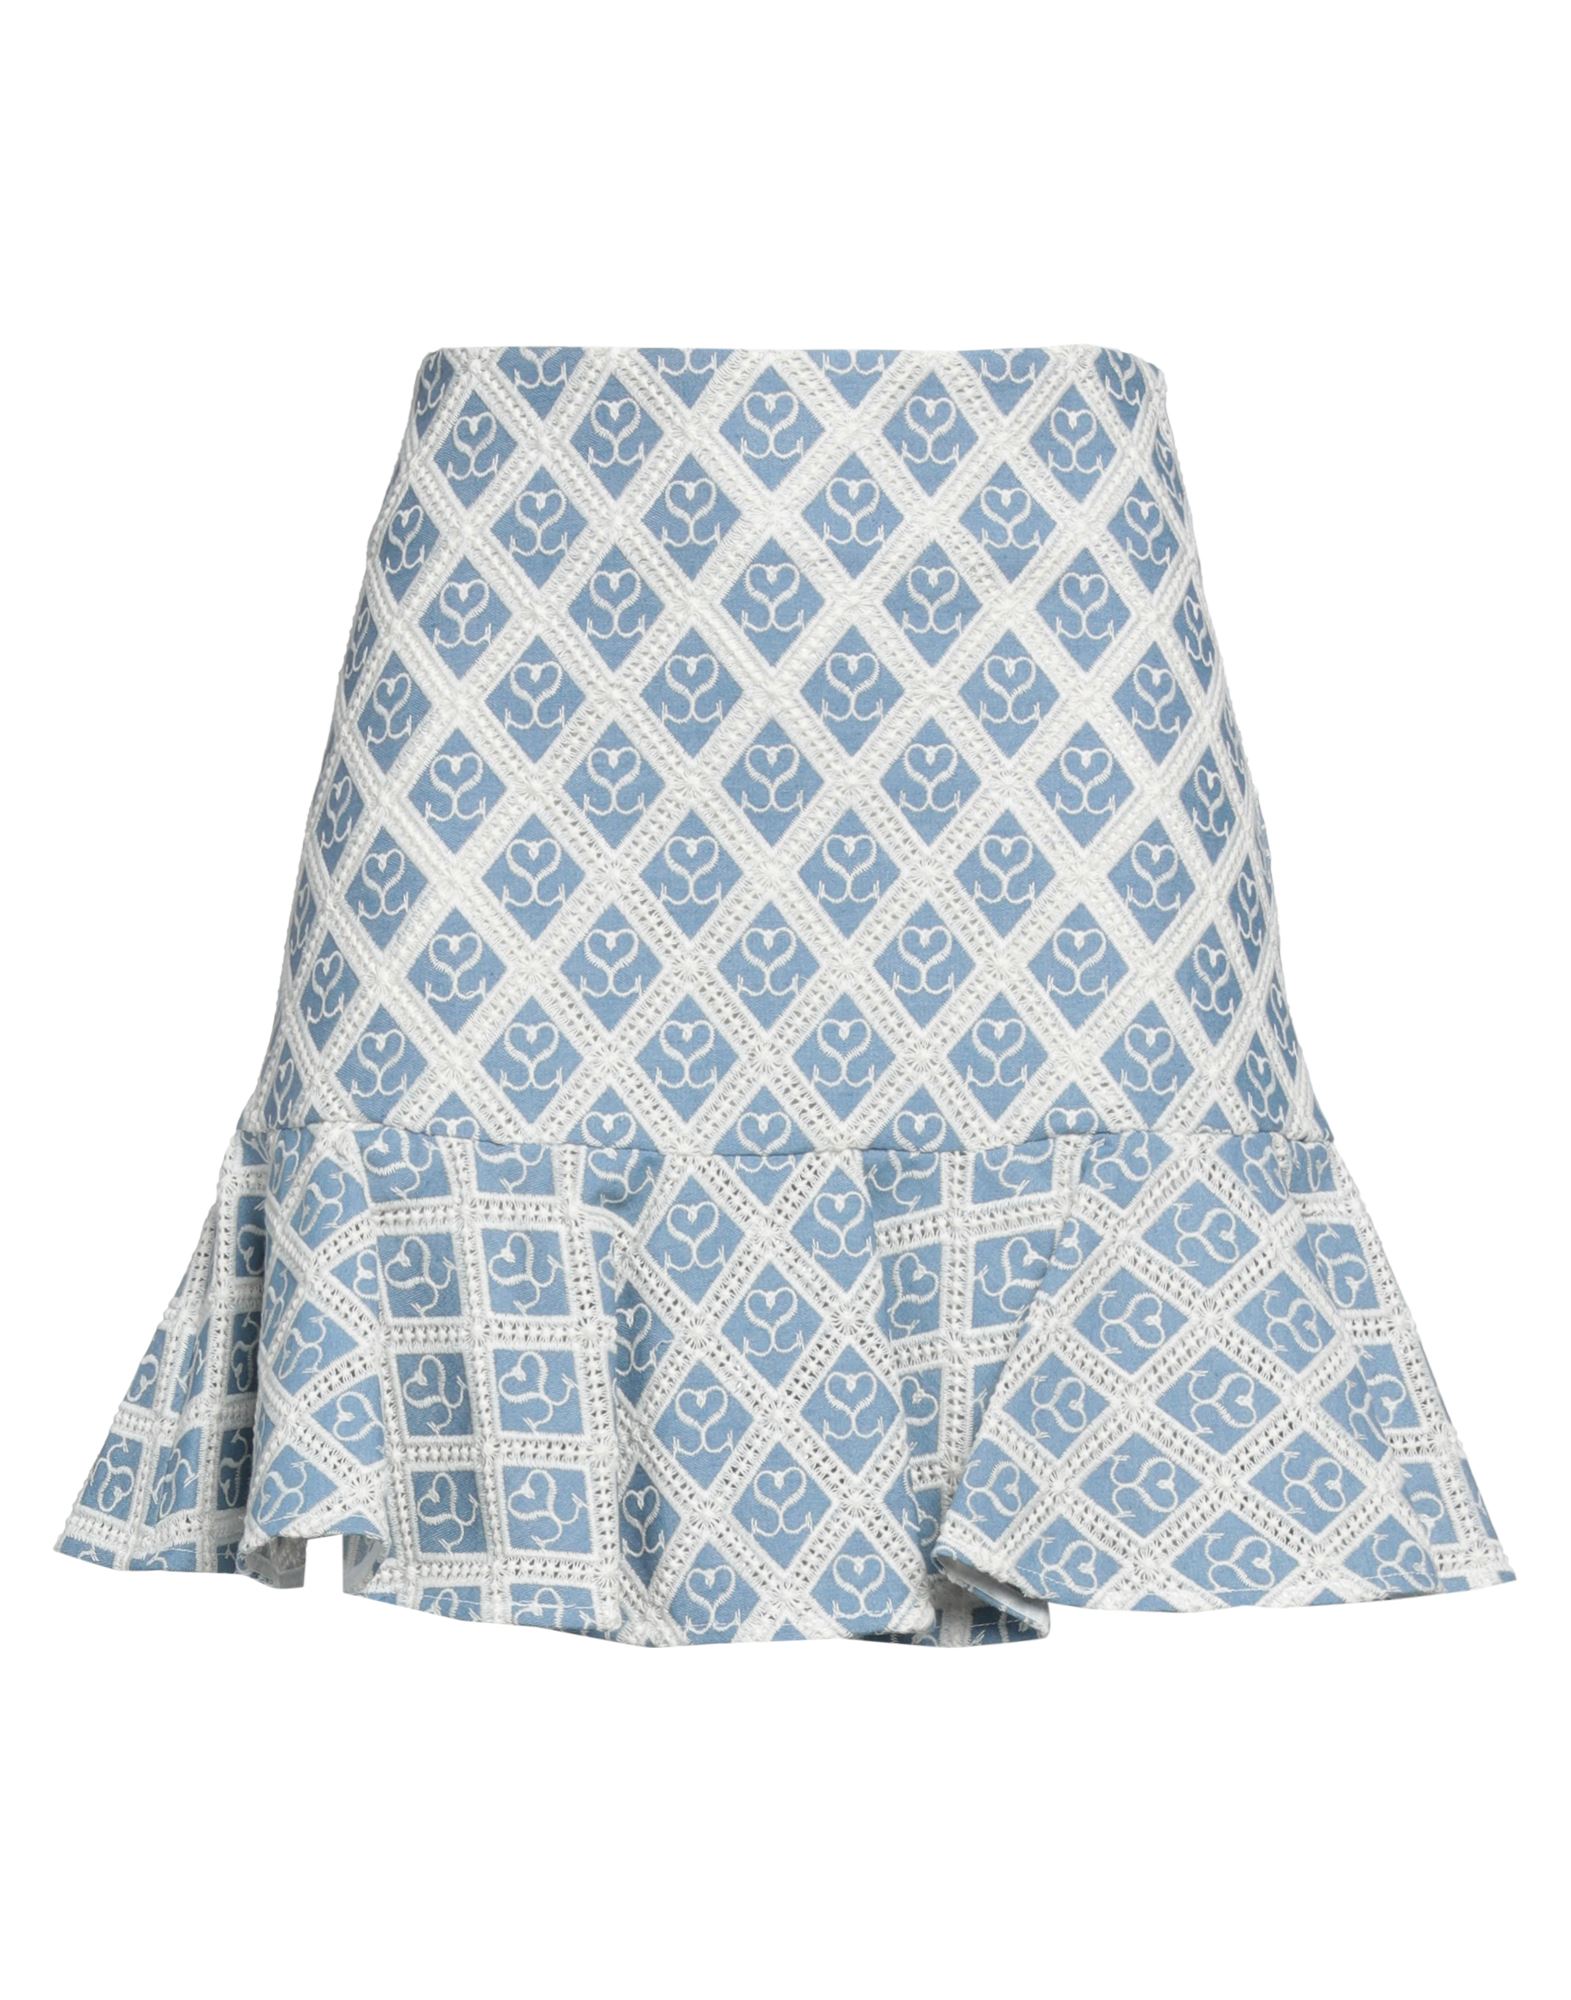 Sandro Woman Mini Skirt Light Blue Size 2 Cotton